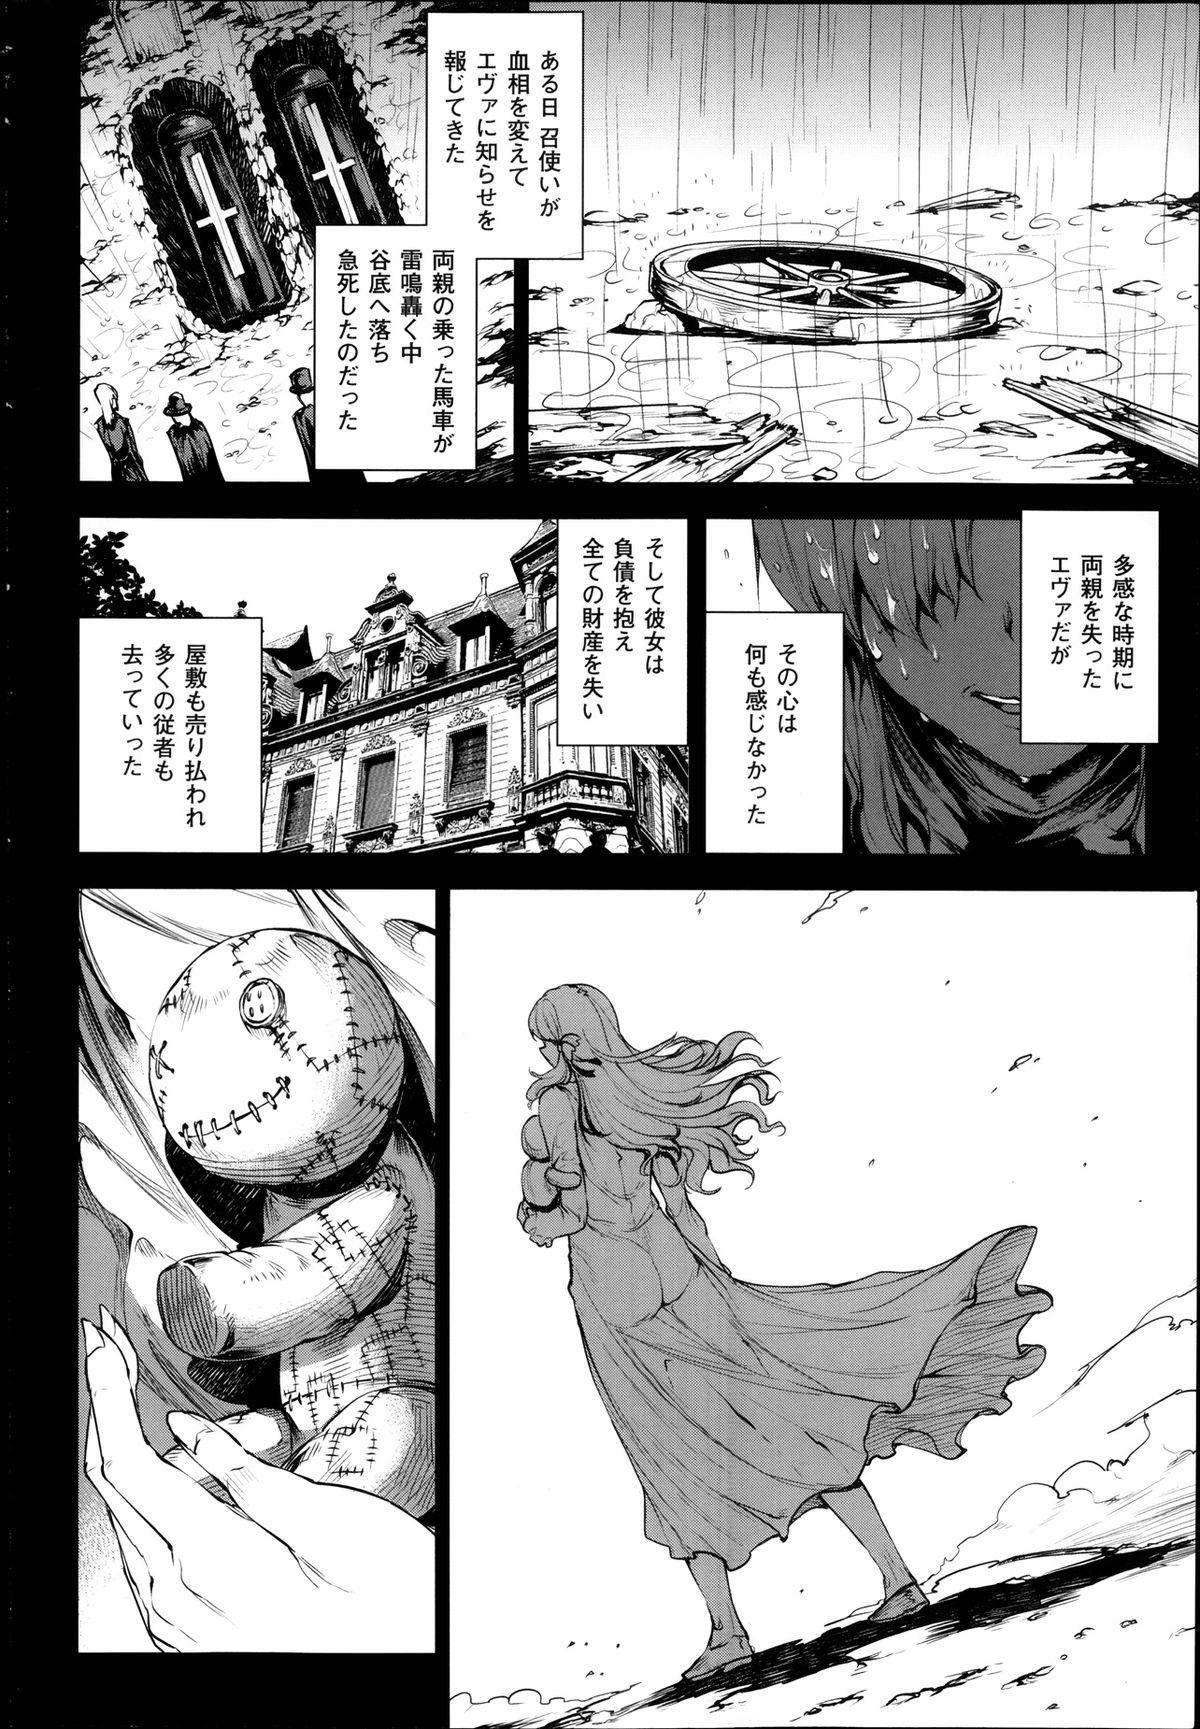 [Erect Sawaru] Shinkyoku no Grimoire -PANDRA saga 2nd story- Ch 07-9.5 55